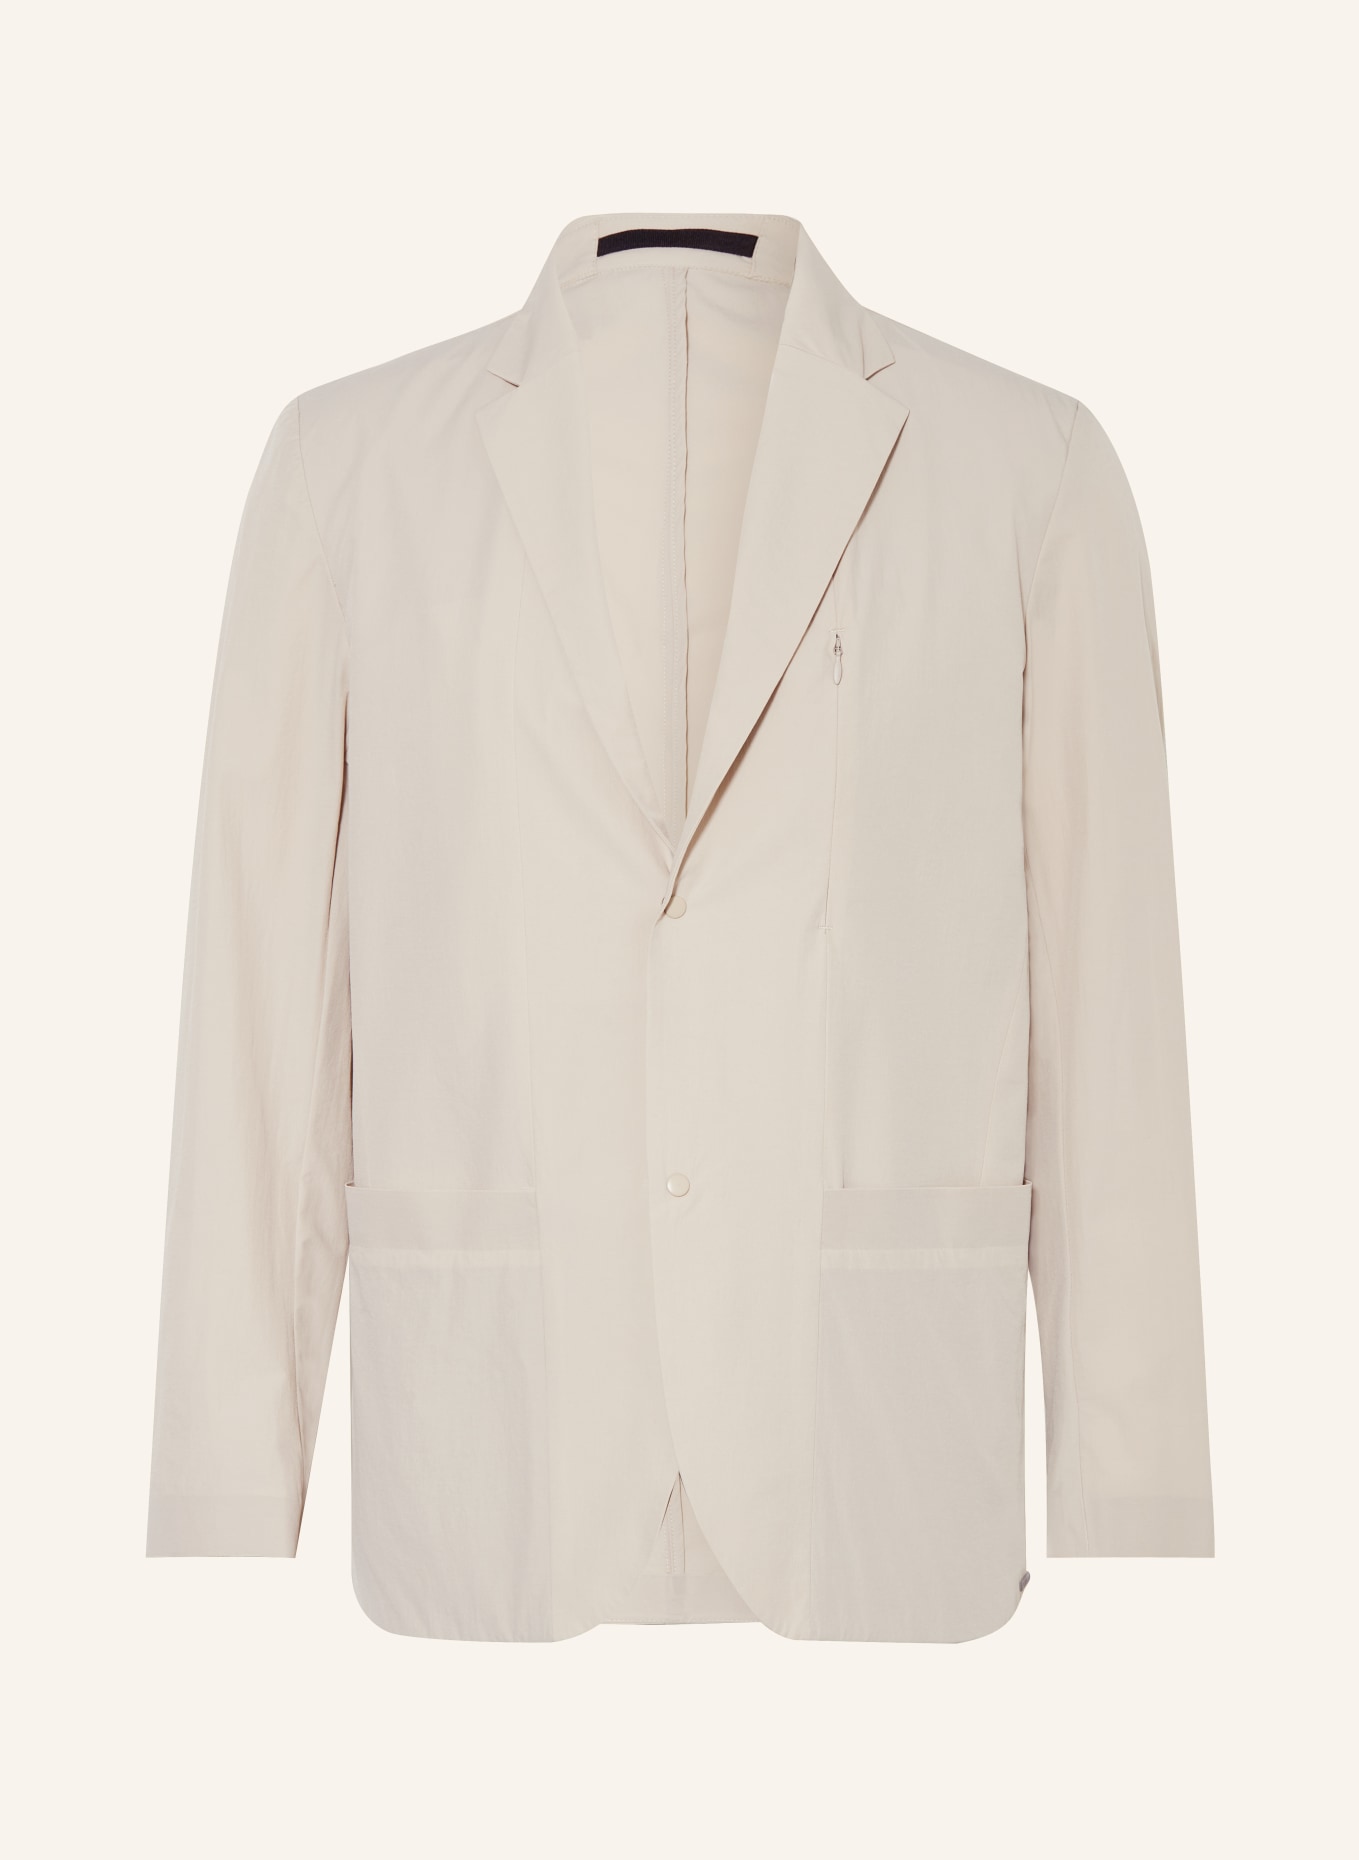 NORSE PROJECTS Suit jacket EMIL regular fit, Color: 0920 Light Khaki (Image 1)